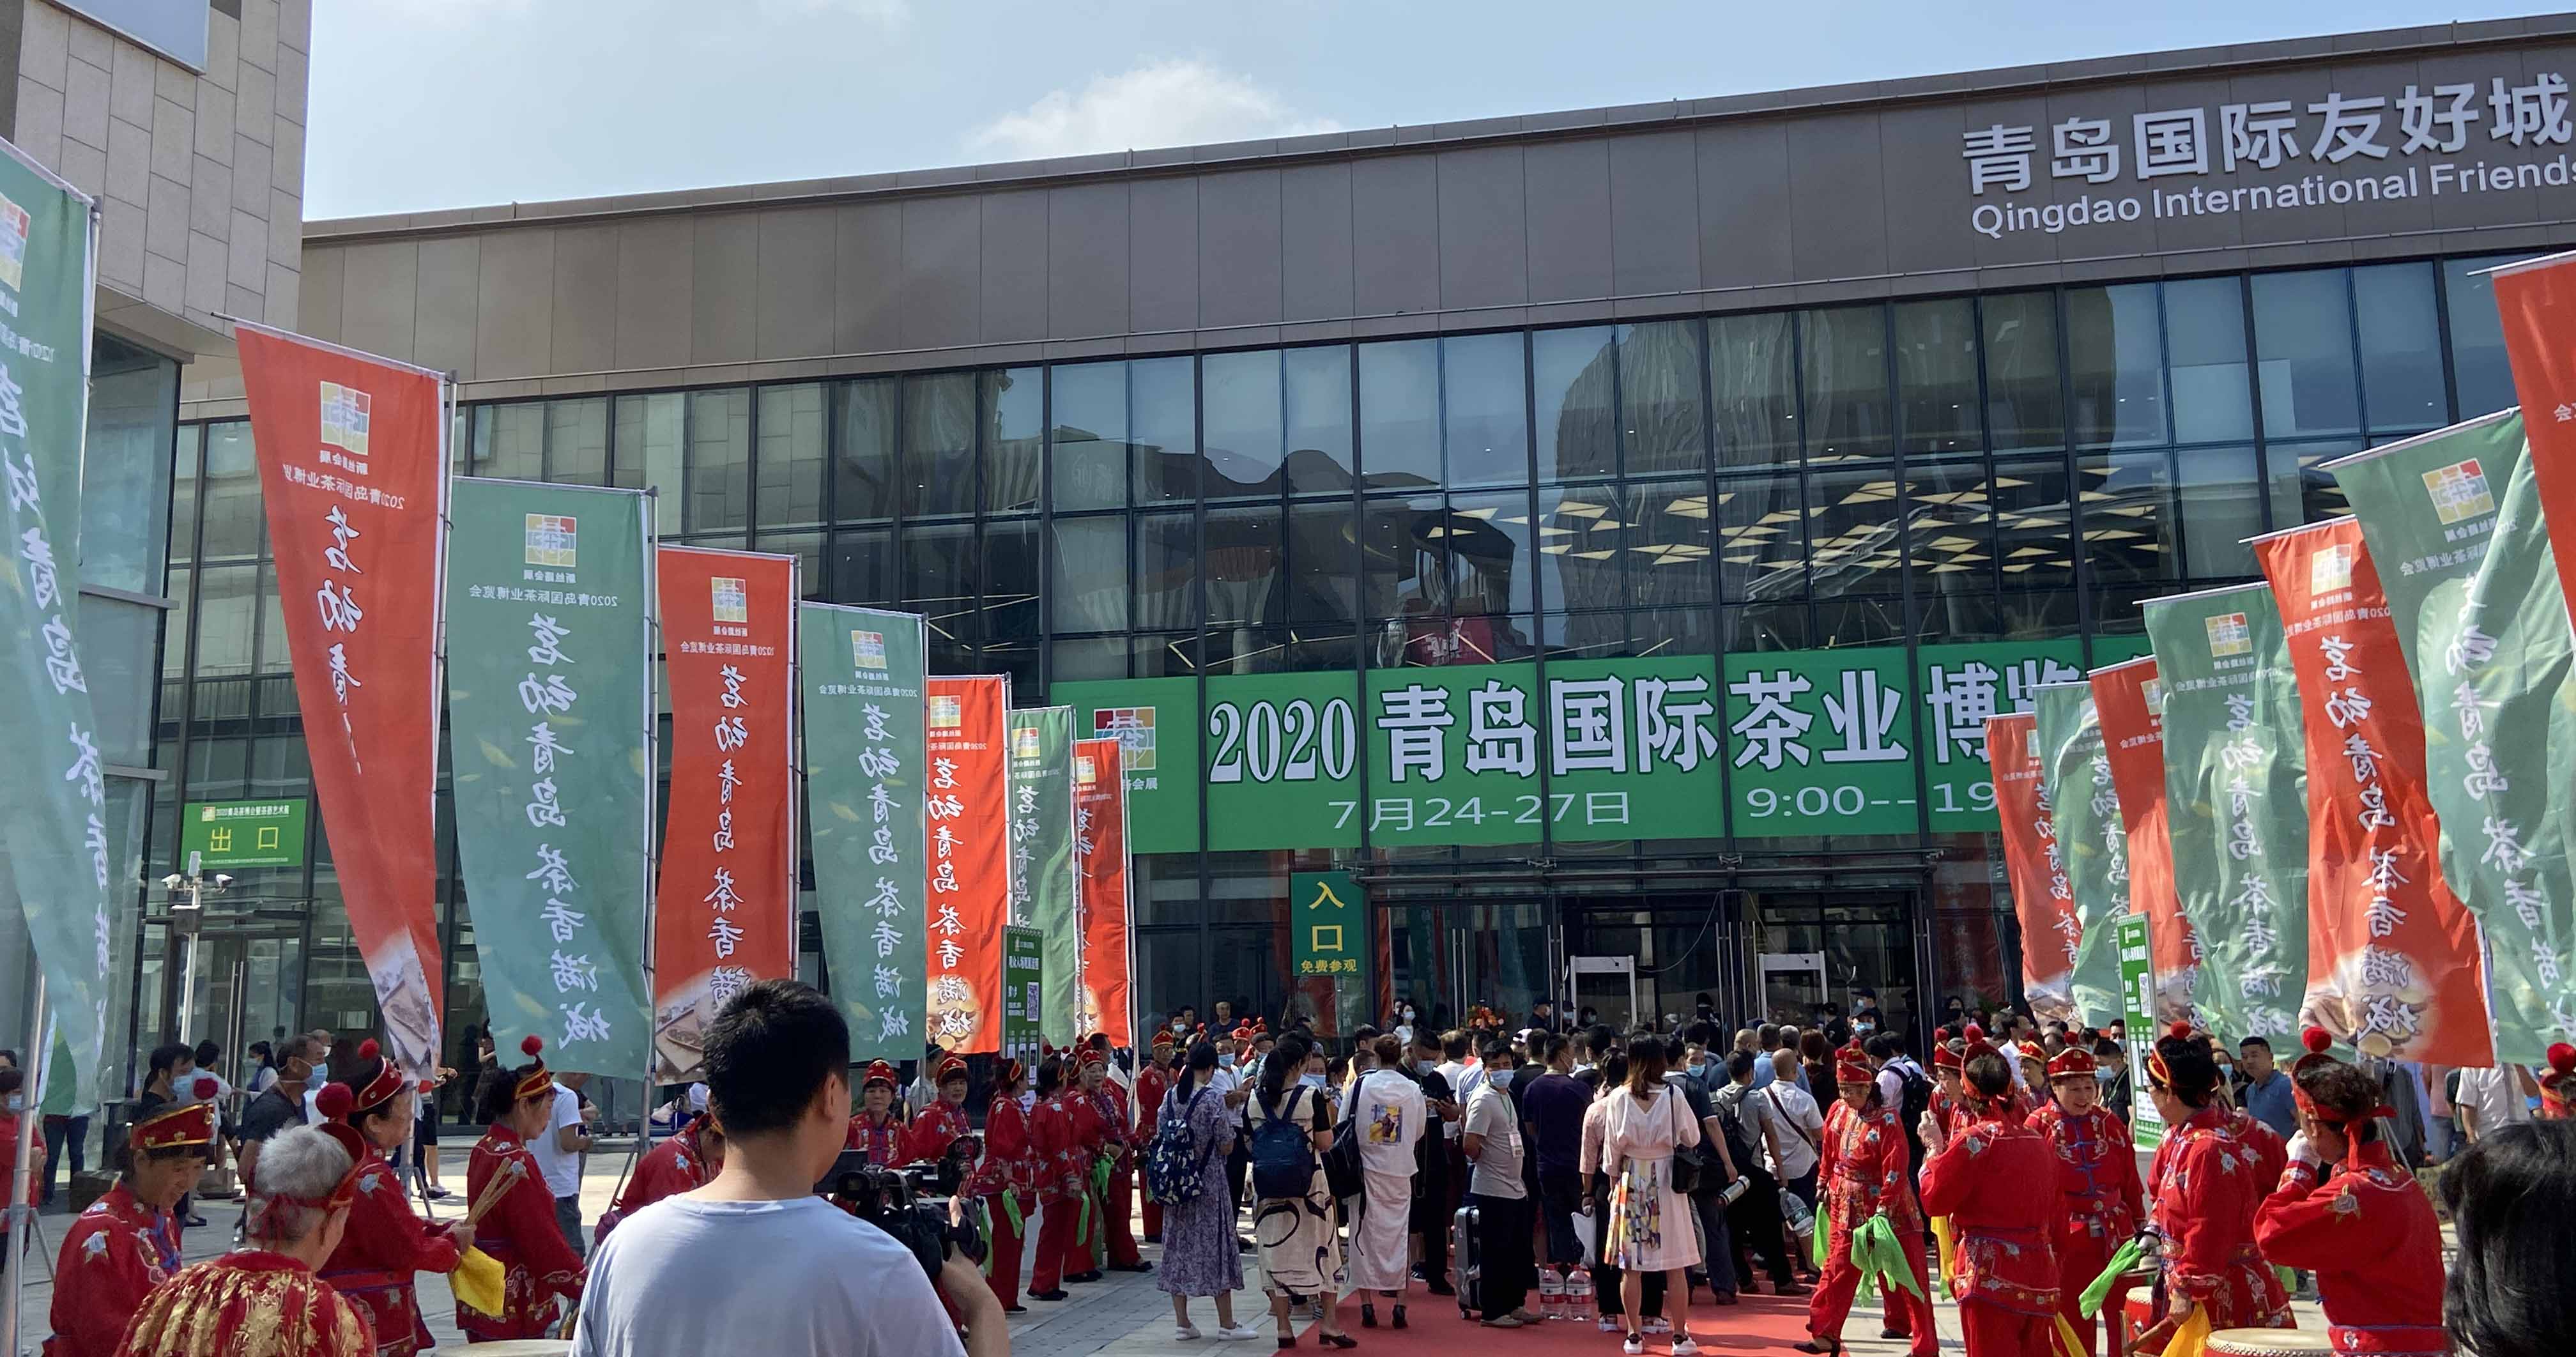 2018中国青岛国际孕婴童博览会 暨国际儿童教育展